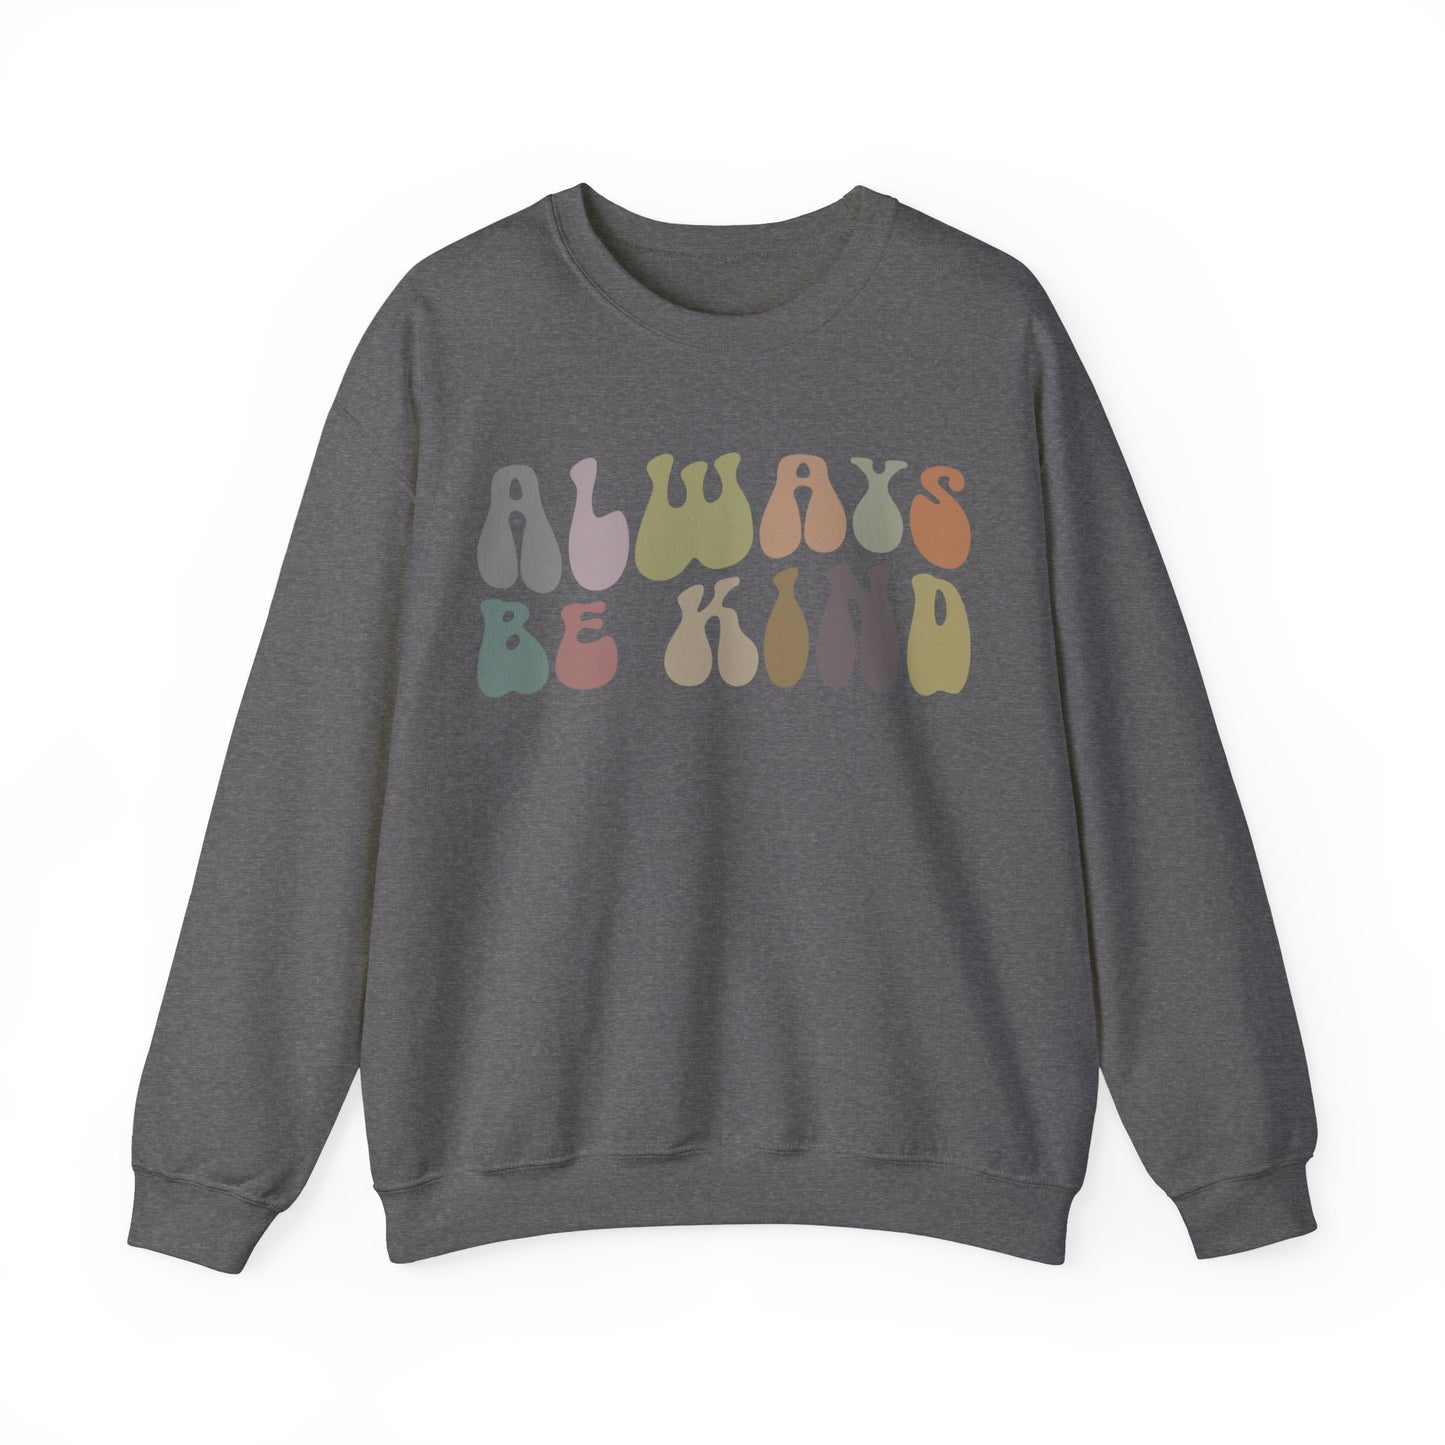 Always Be Kind Sweatshirt, Positivity Sweatshirt, Kind Mom Sweatshirt, Be a Kind Human Sweatshirt, Cute Inspirational Sweatshirt, S1371